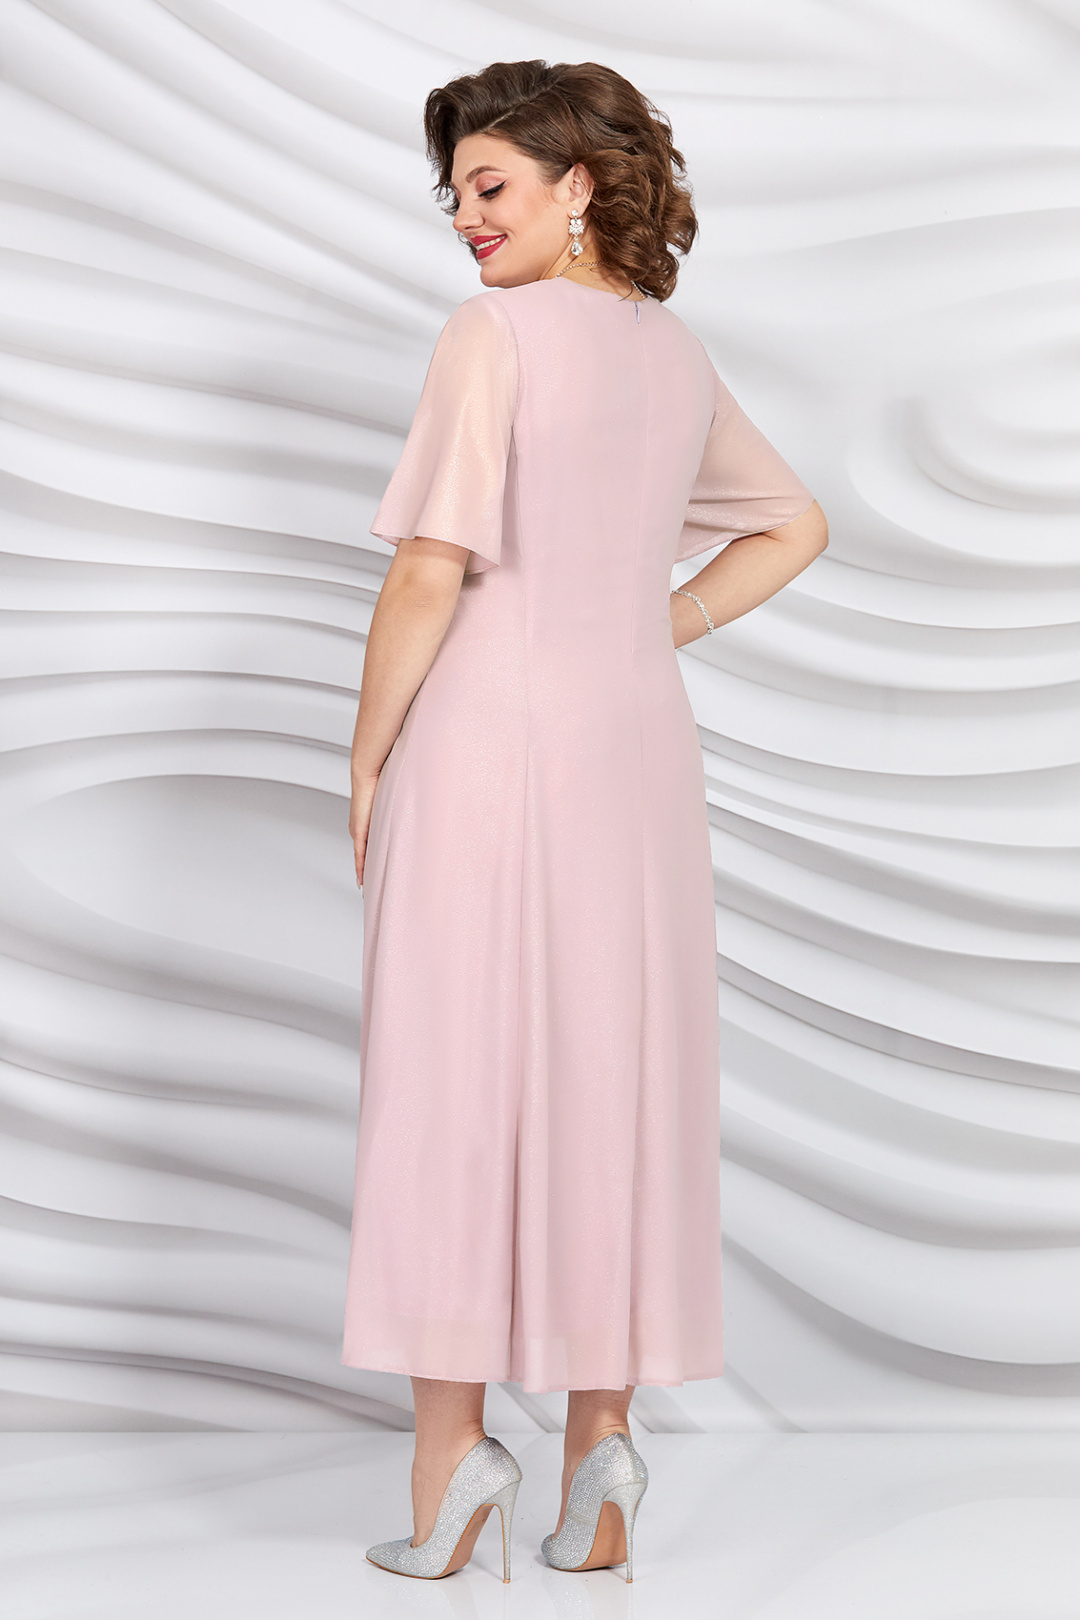 Платье Mira Fashion 5398-3